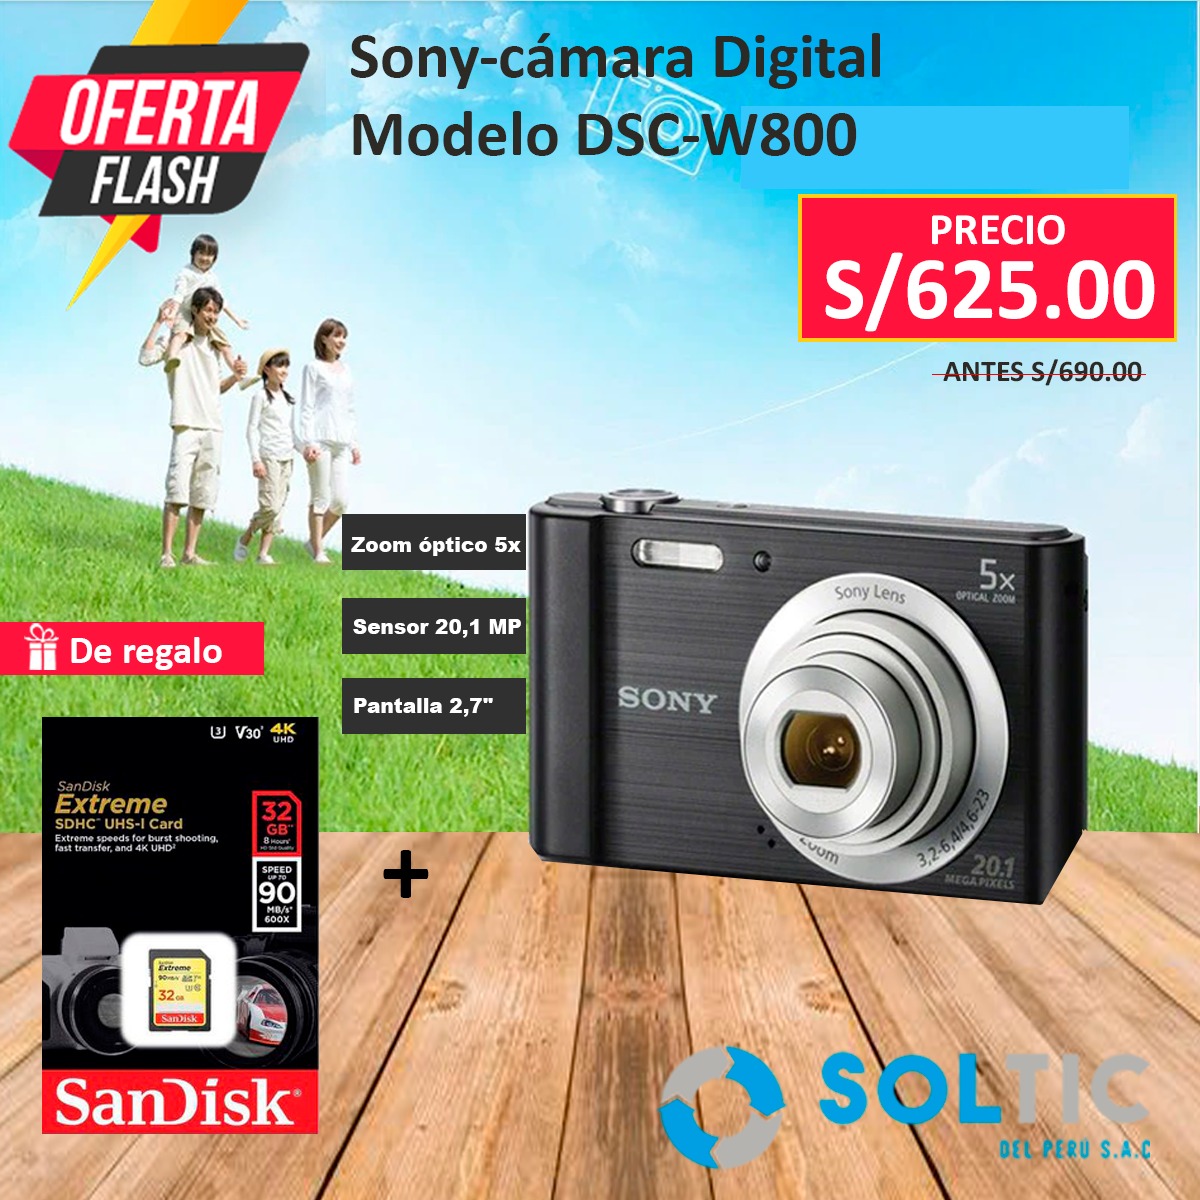 CAMARA DIGITAL SONY CYBERSHOT DSC-W800 20MPX SD 32GB Extreme | Soltic del S.A.C